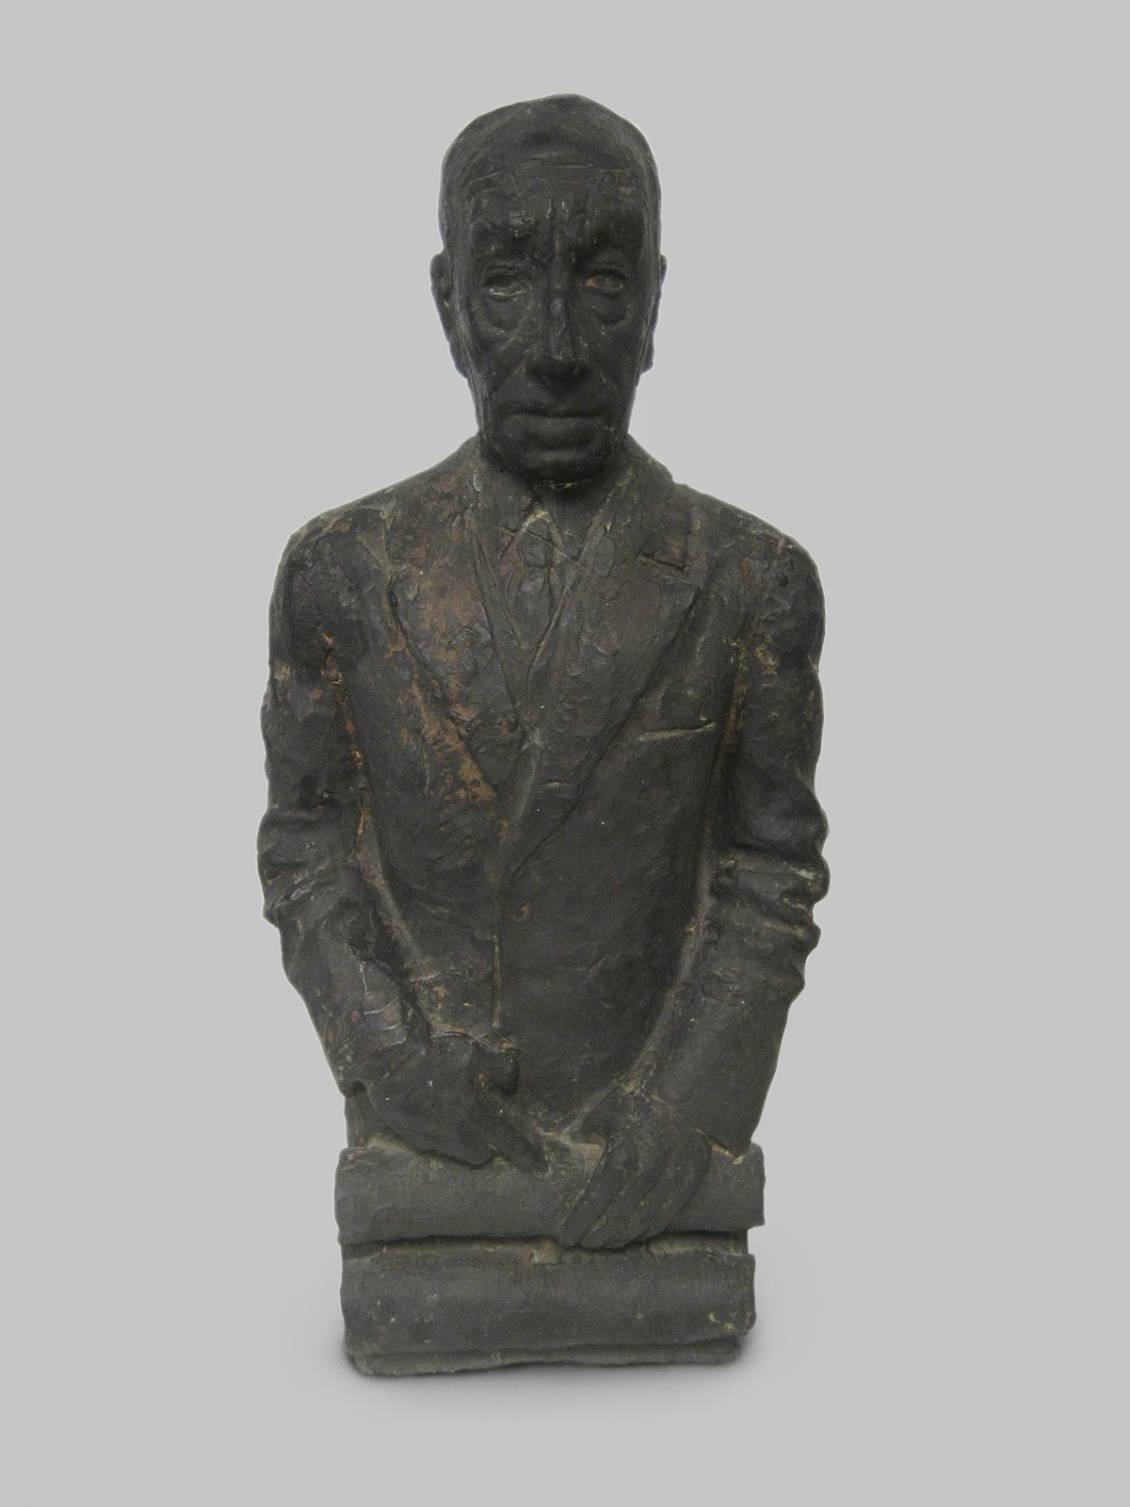 John Rädecker, Bronze bust of Henry van de Velde, donation of Mrs. Rädecker in 1957